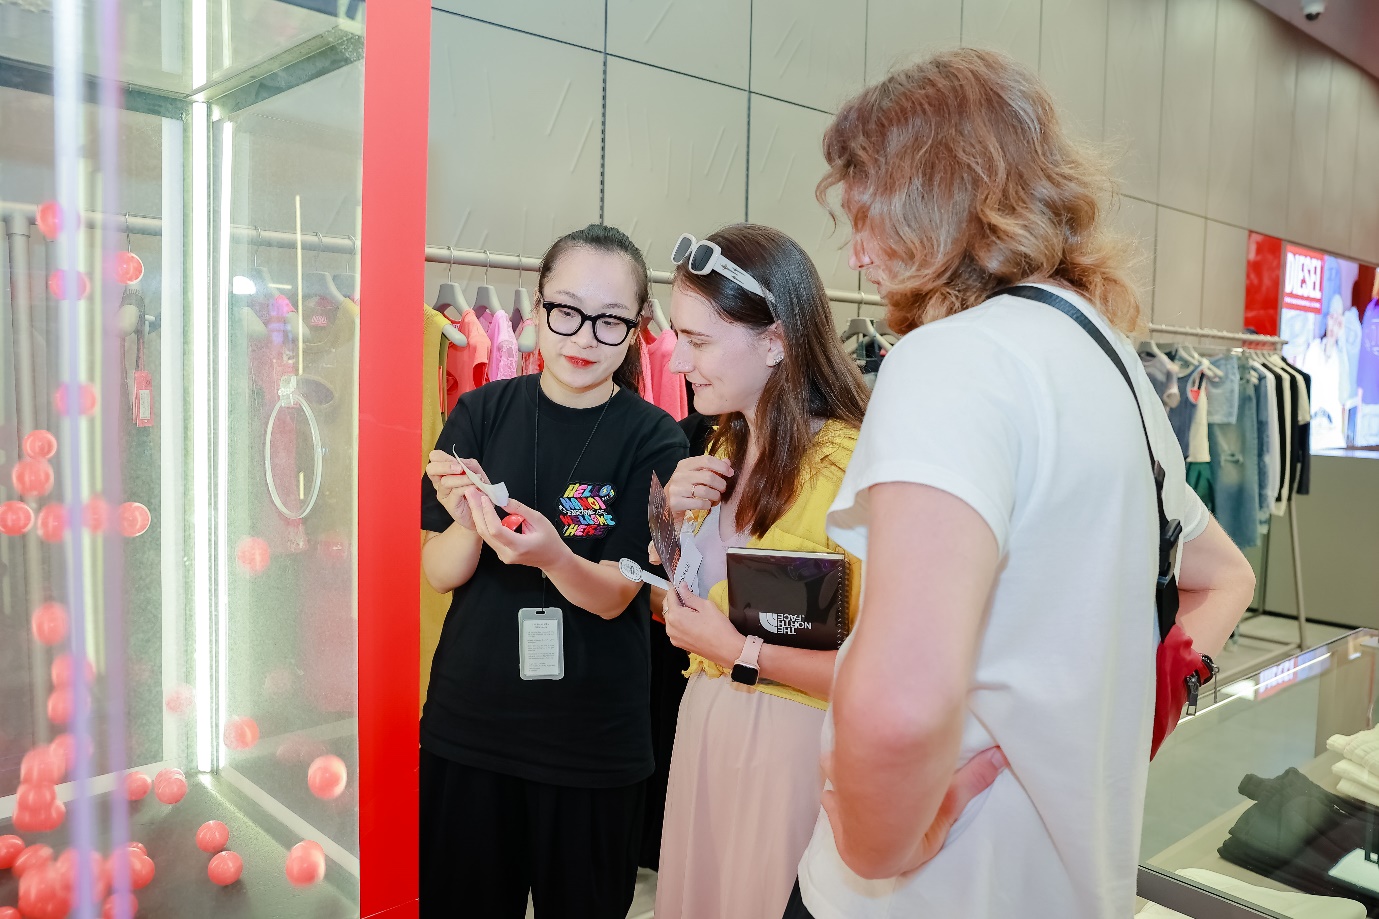 DIESEL ra mắt cửa hàng thứ 2 tại Việt Nam: Không gian mua sắm đẳng cấp, táo bạo tại Lotte Mall, Quận Tây Hồ, Hà Nội - Ảnh 6.